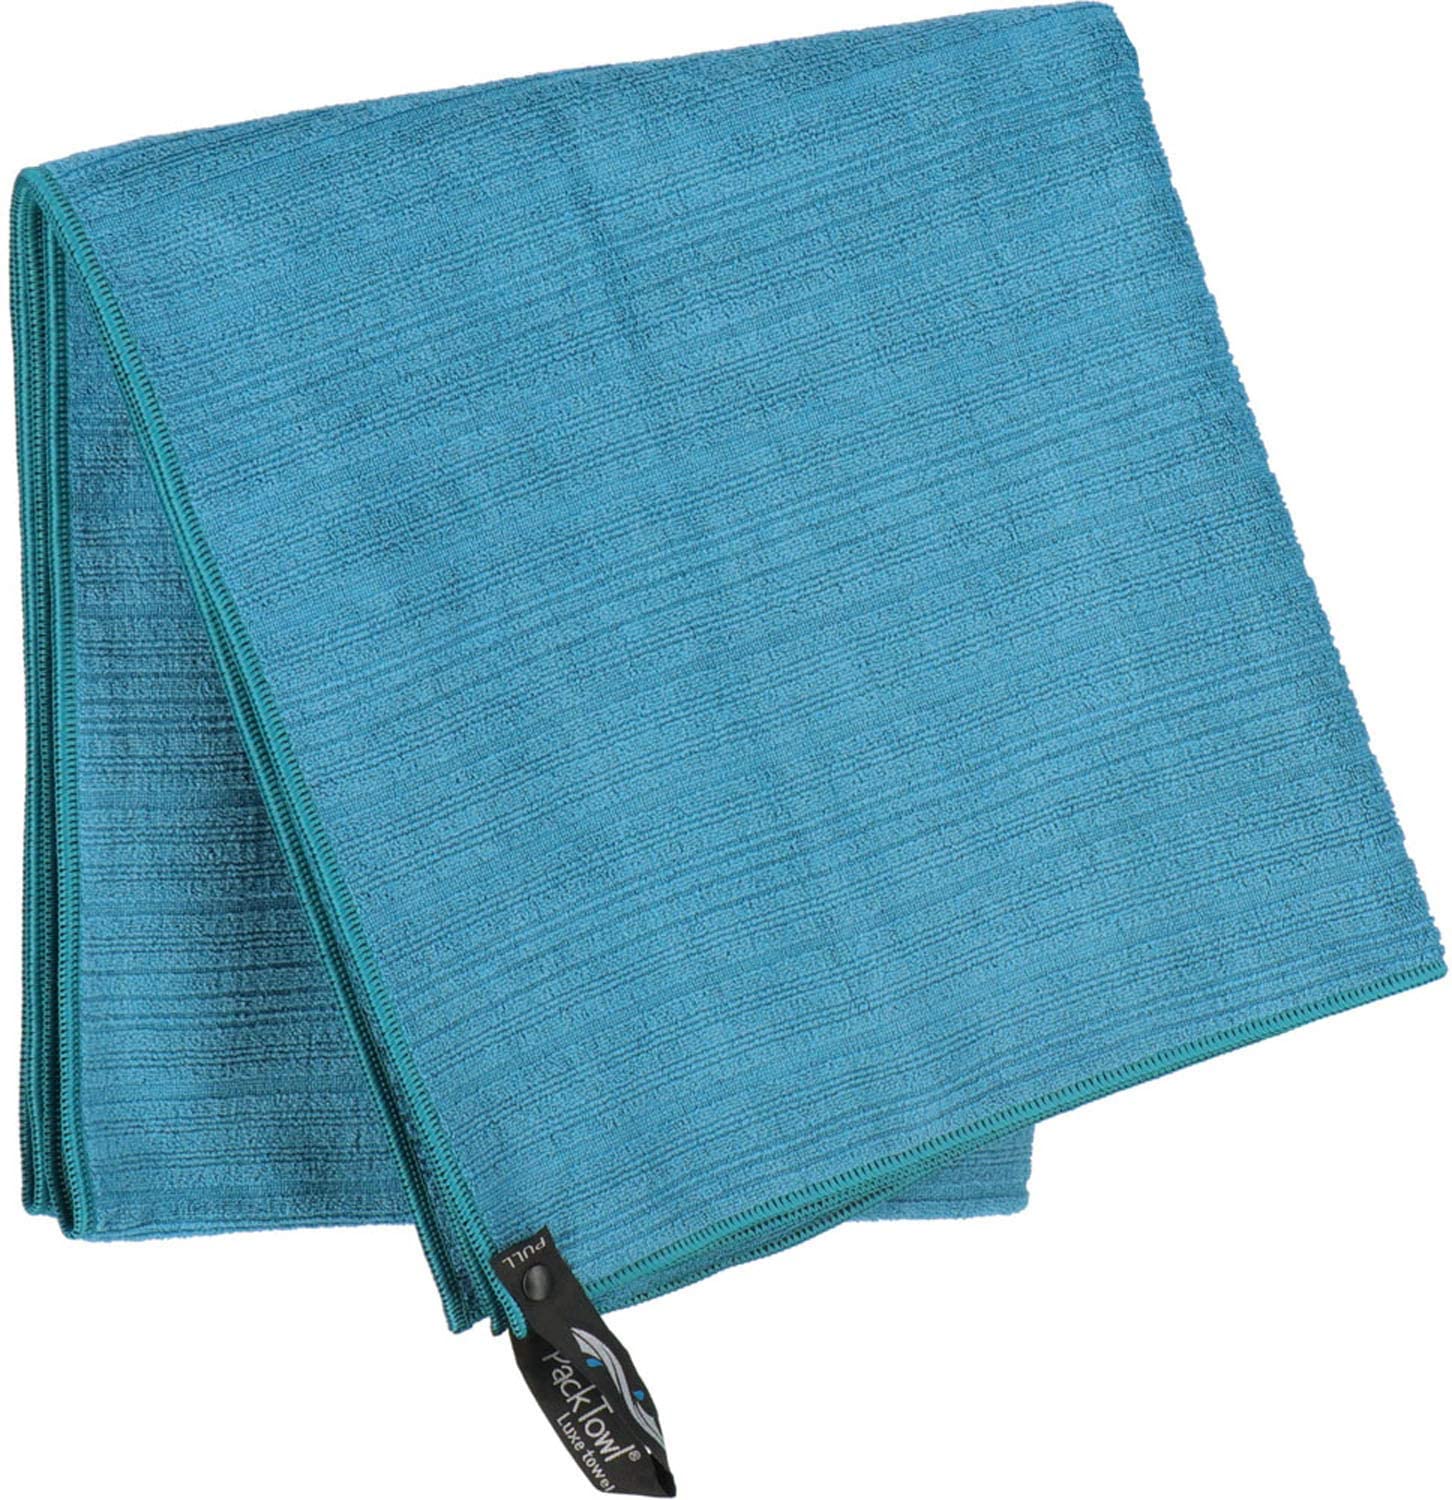 PackTowl Microfiber Towel